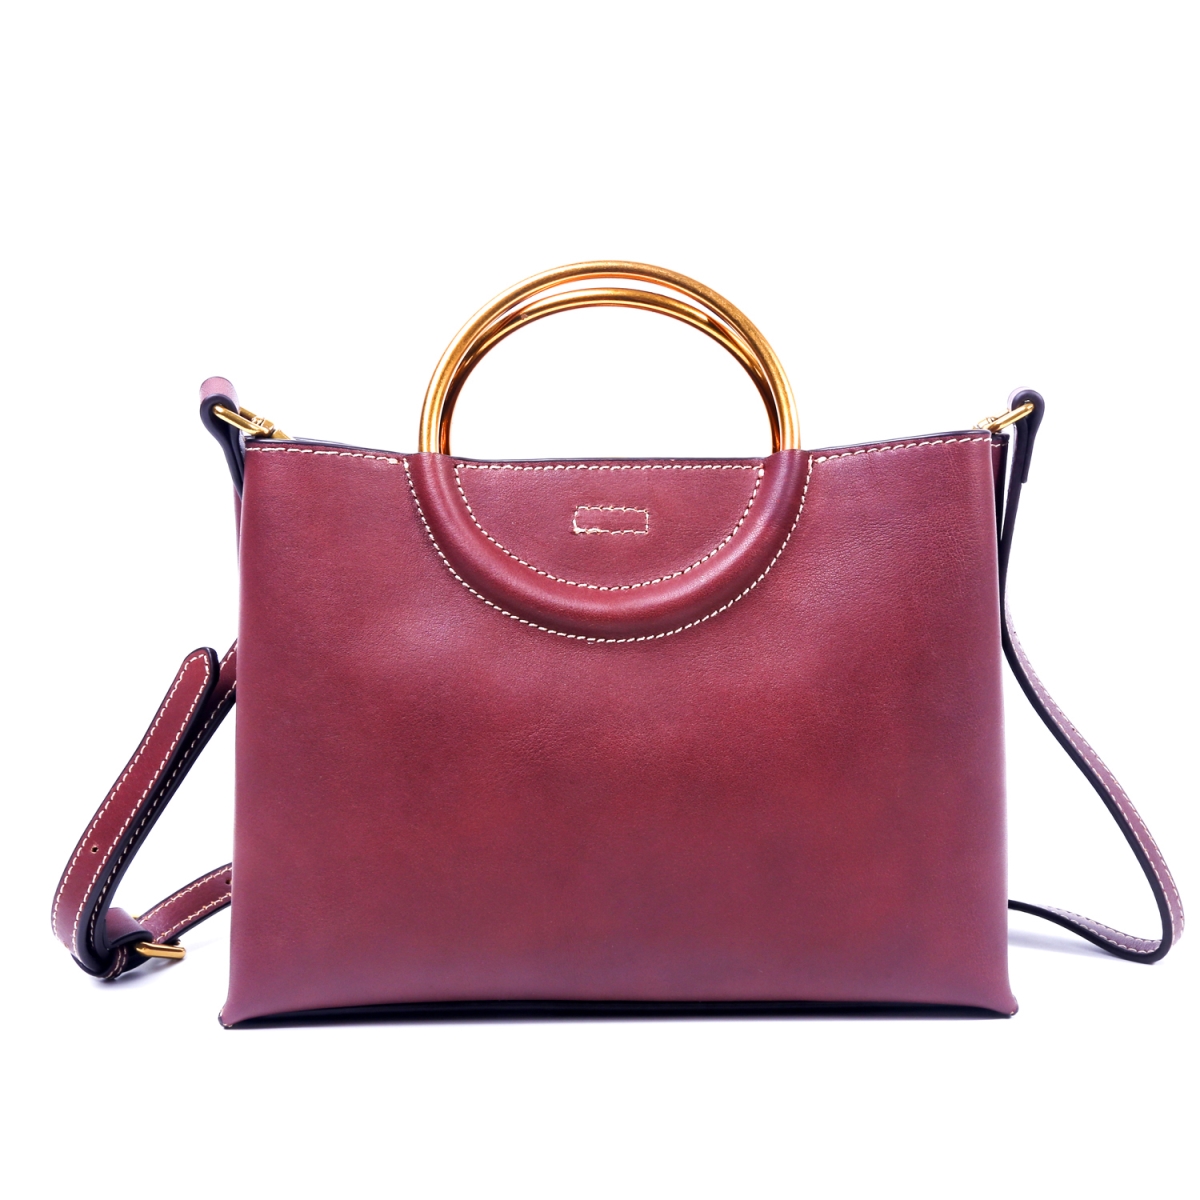 Fe8013-claret Maria Genuine Leather Satchel - Claret